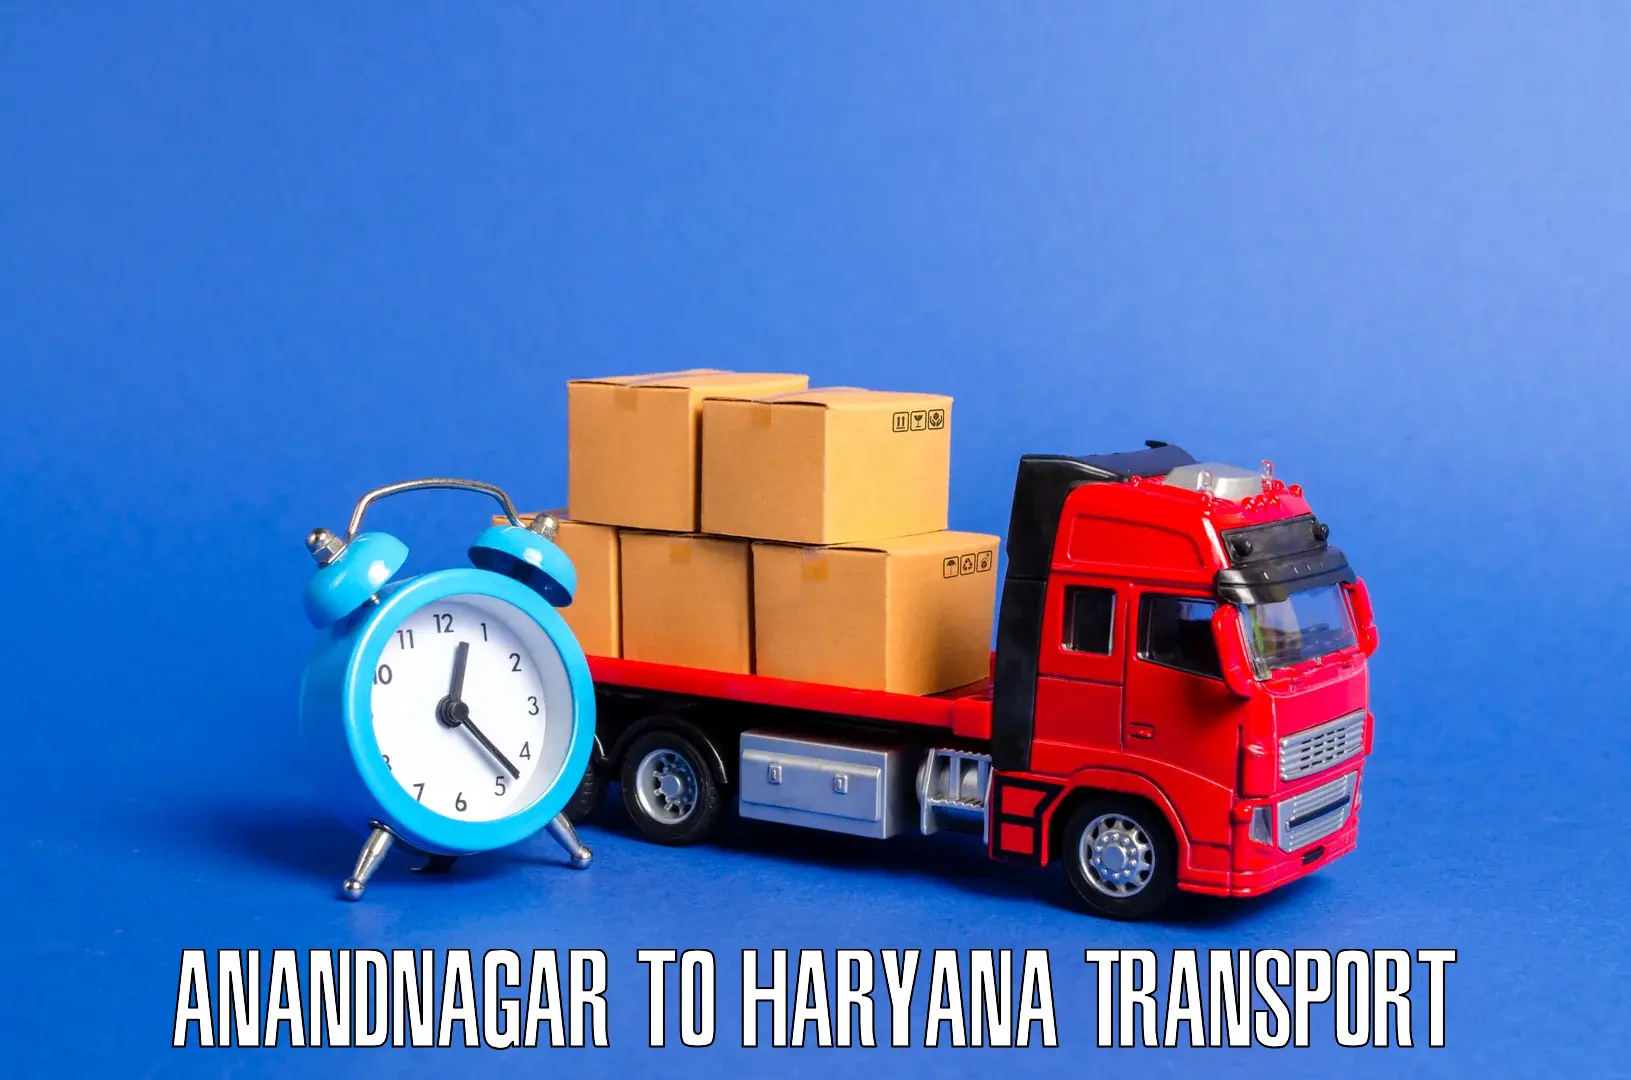 Commercial transport service Anandnagar to Mahendragarh